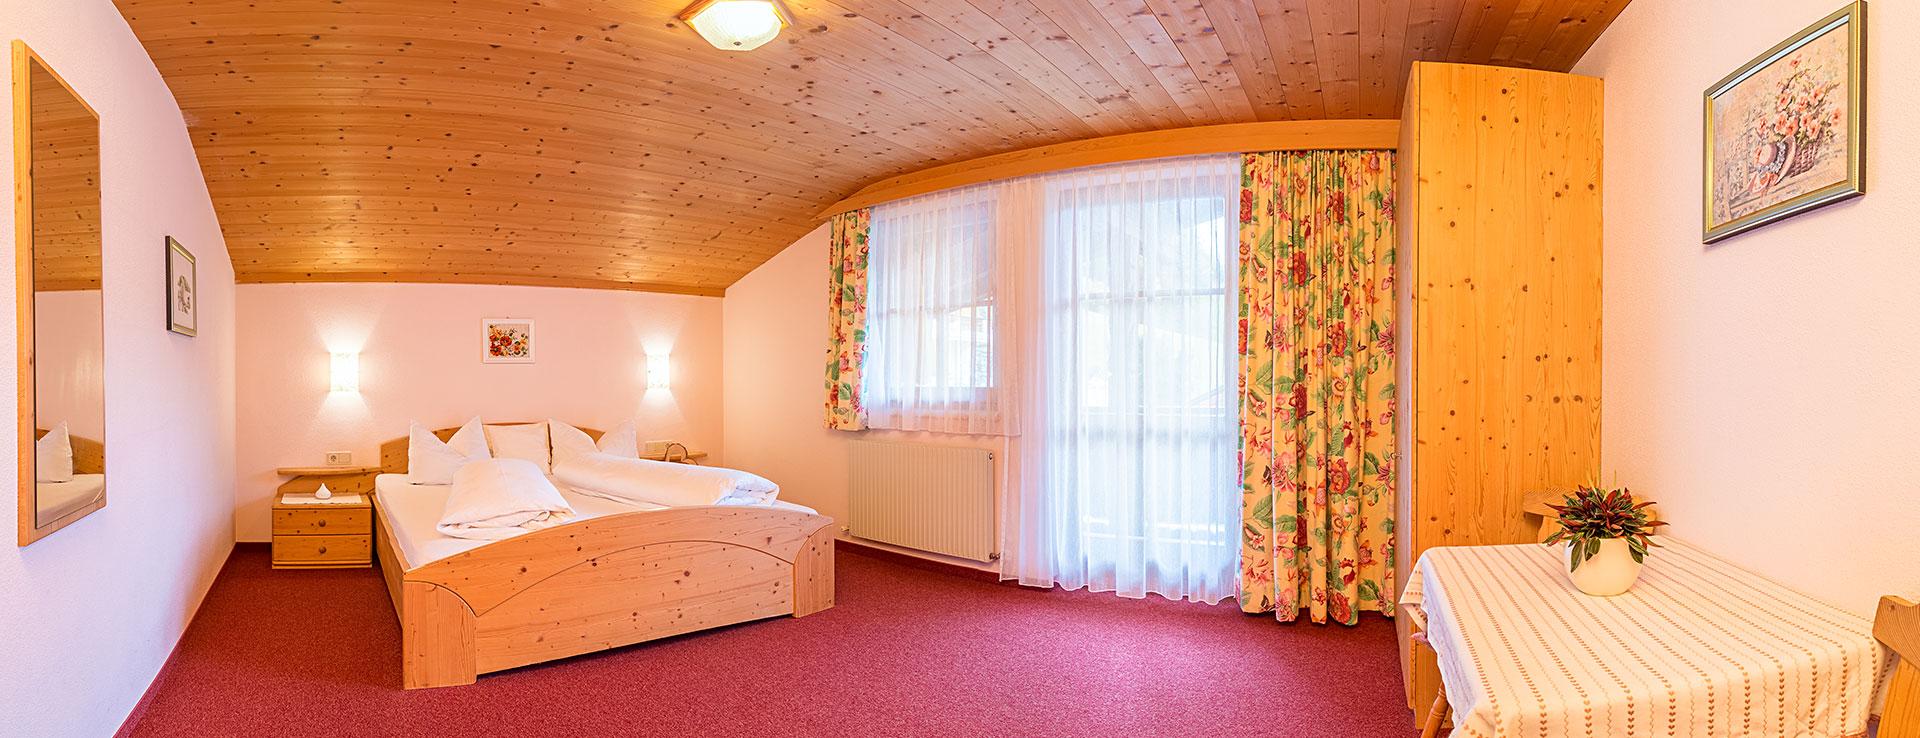 Zimmer-Ferienwohnung Mair - Neustift-Stubaital - Apartment